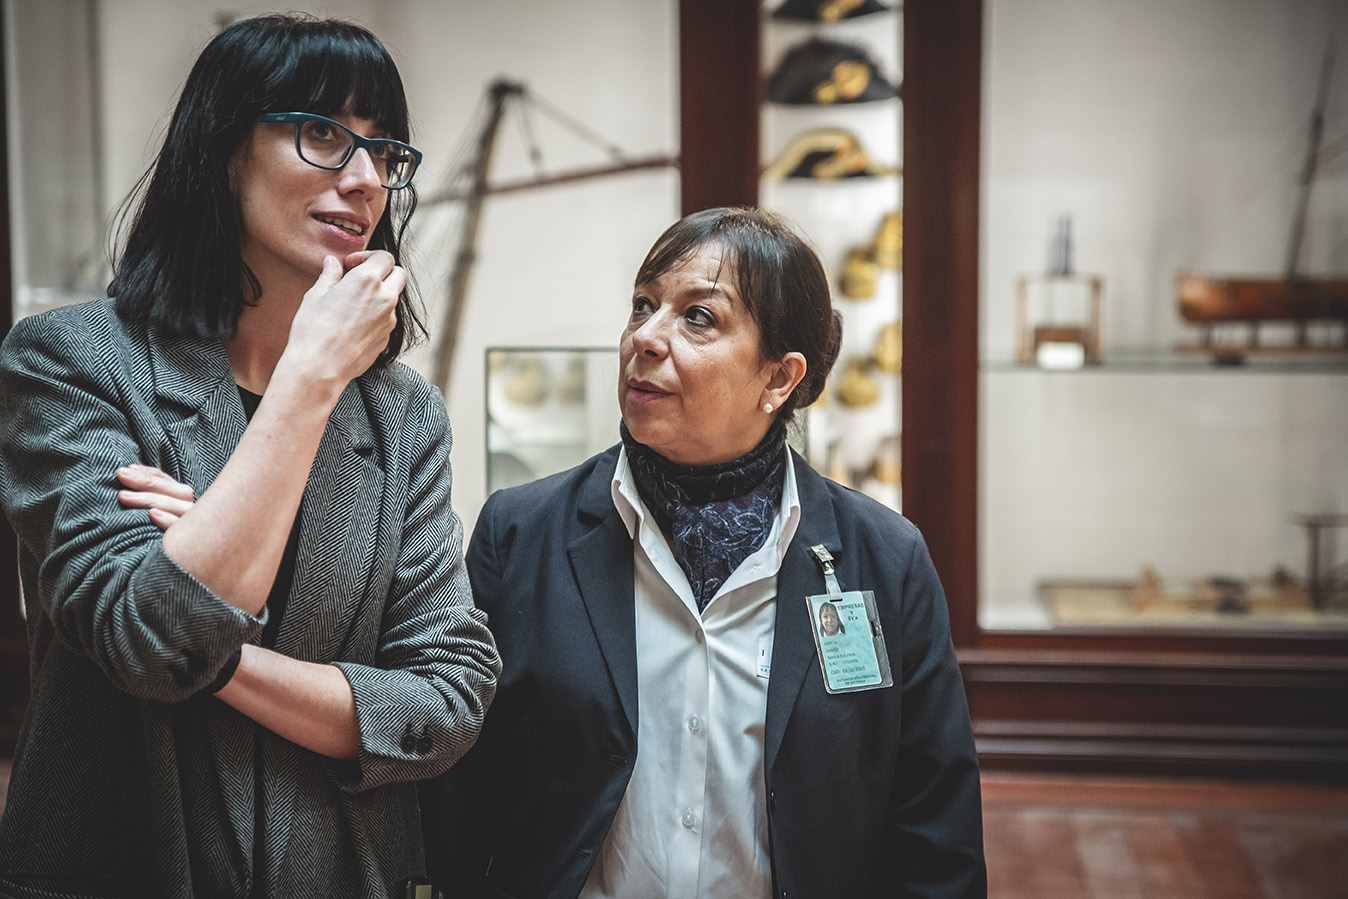 Carla Corpas, a la izquierda, es técnica de la unidad de apoyo a la actividad profesional de Integra CEE y da apoyo social a los trabajadores de la entidad